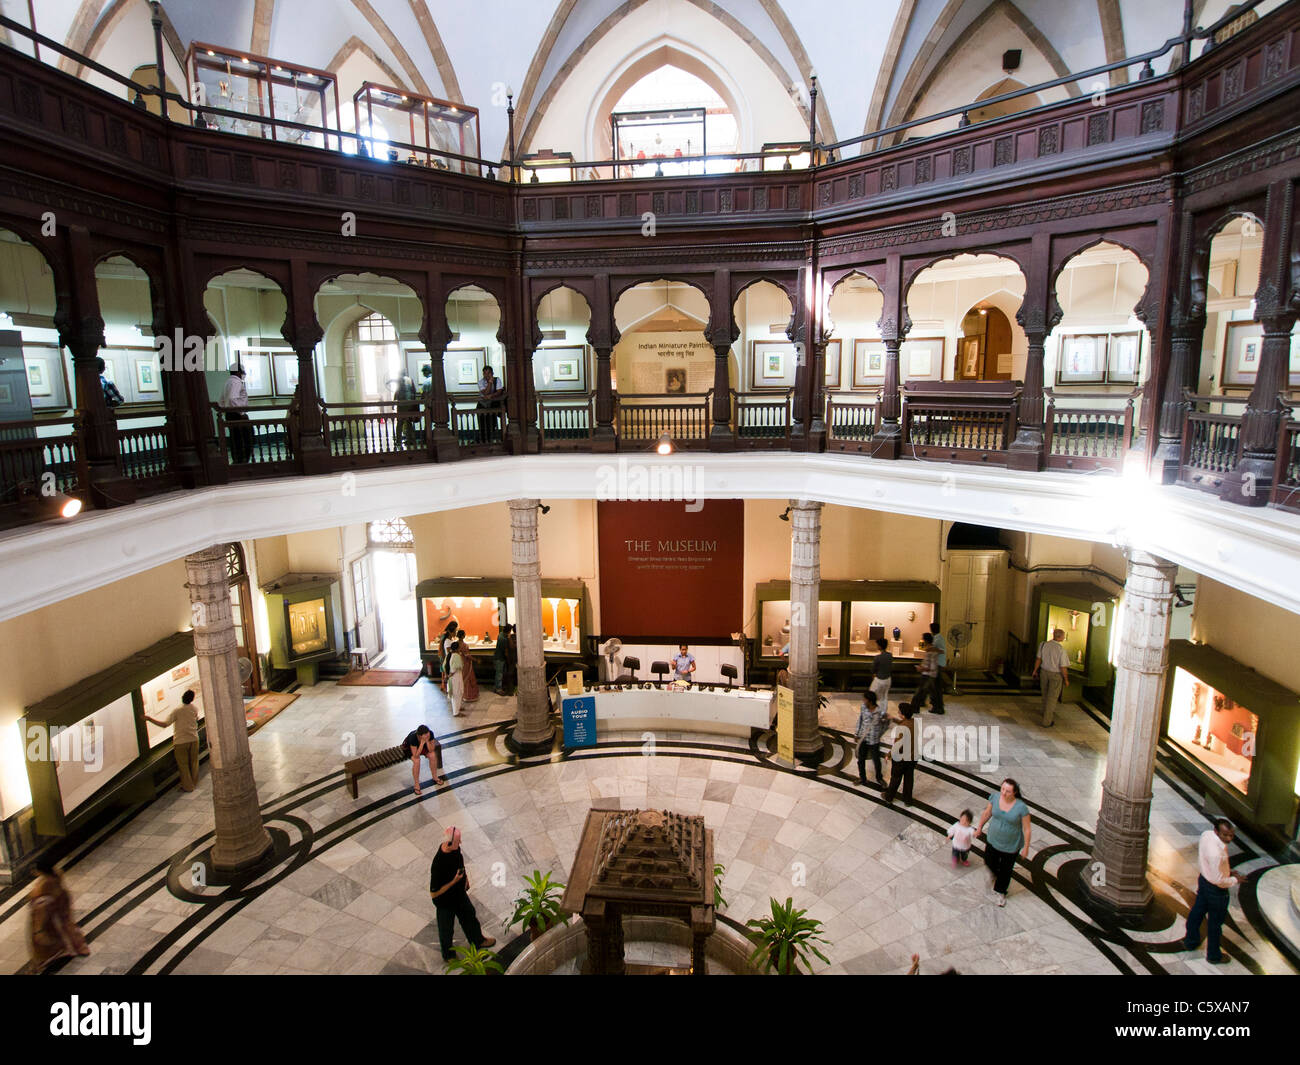 L'entrée principale de l'intérieur de la Gare Chhatrapati Shivaji Maharaj Vastu Sangrahalaya anciennement musée du Prince de Galles à Mumbai Inde Banque D'Images